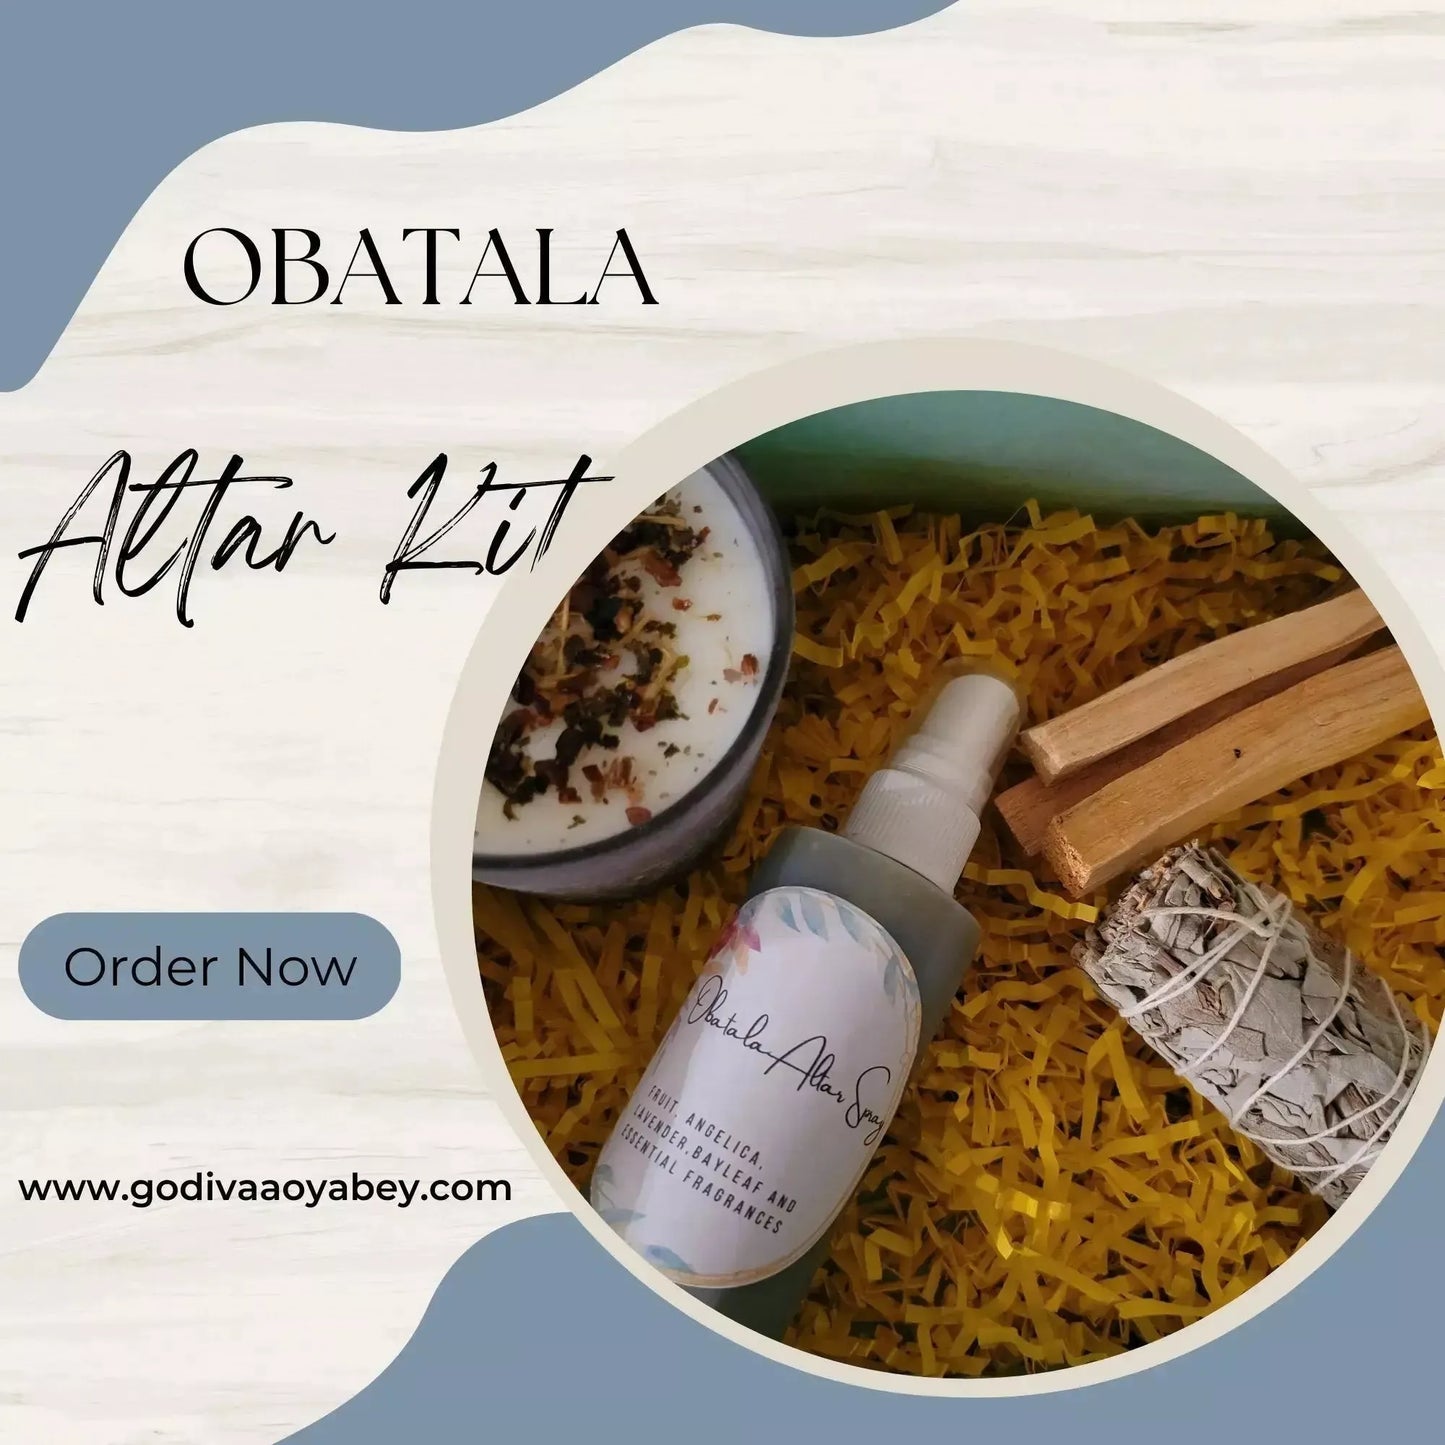 Obatala Altar Kit - Godiva Oya Bey